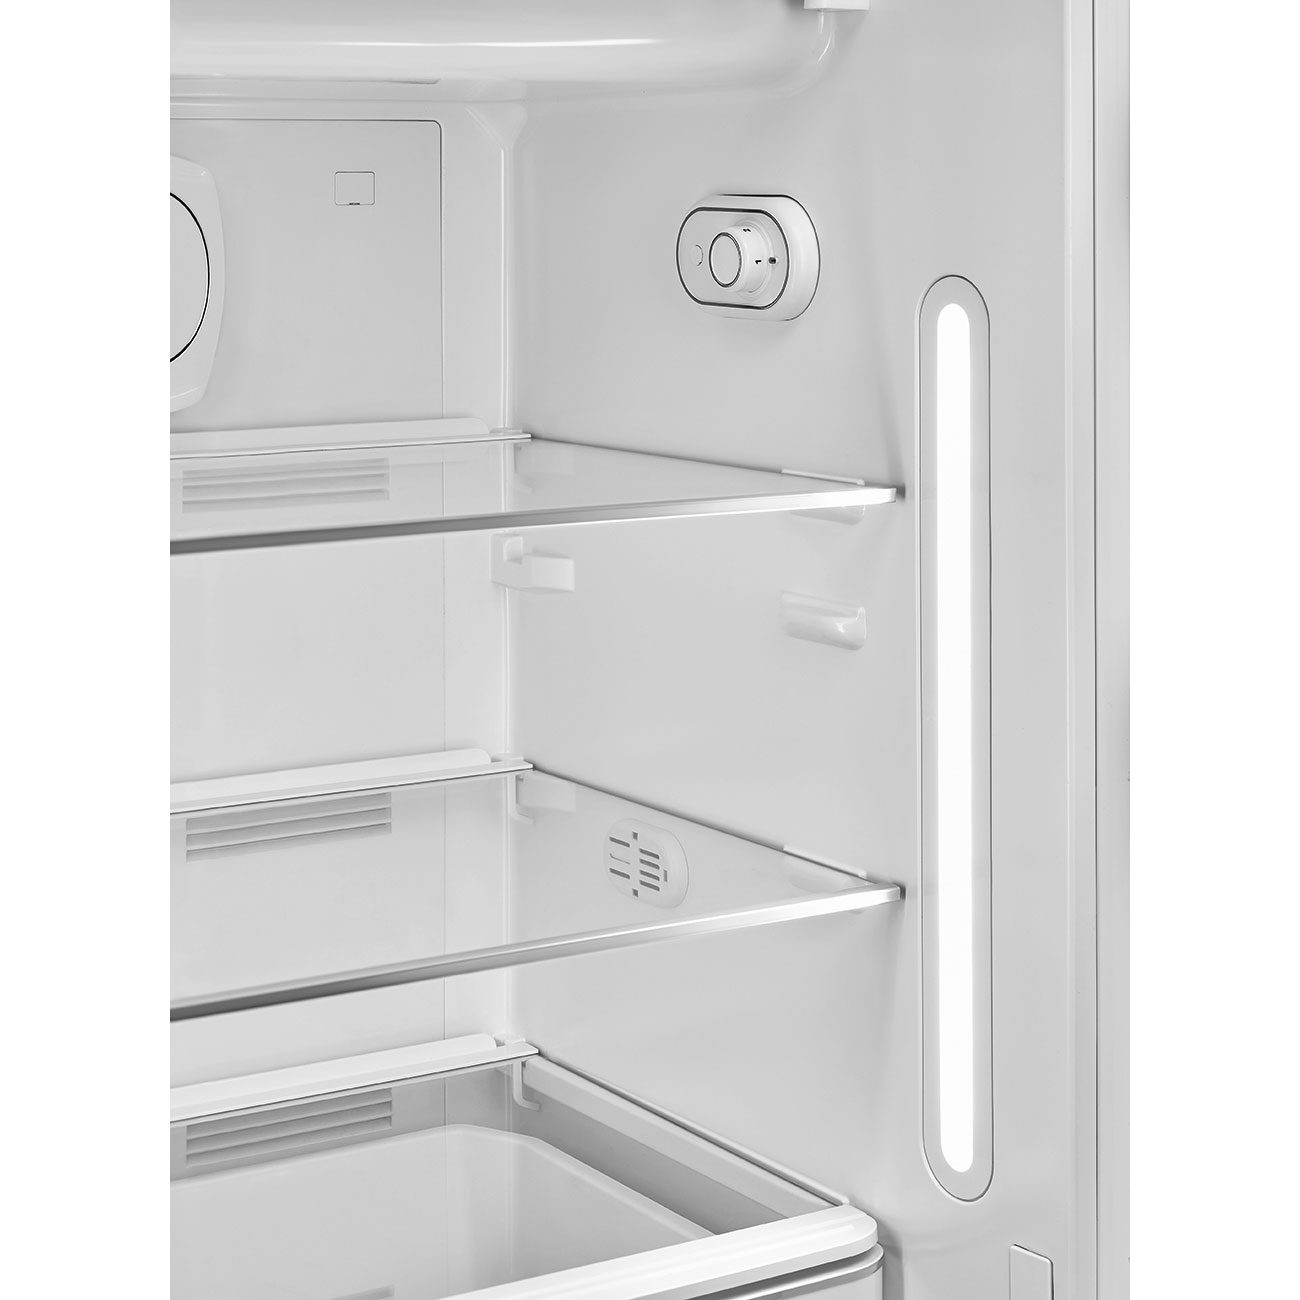 White refrigerator - Smeg_4